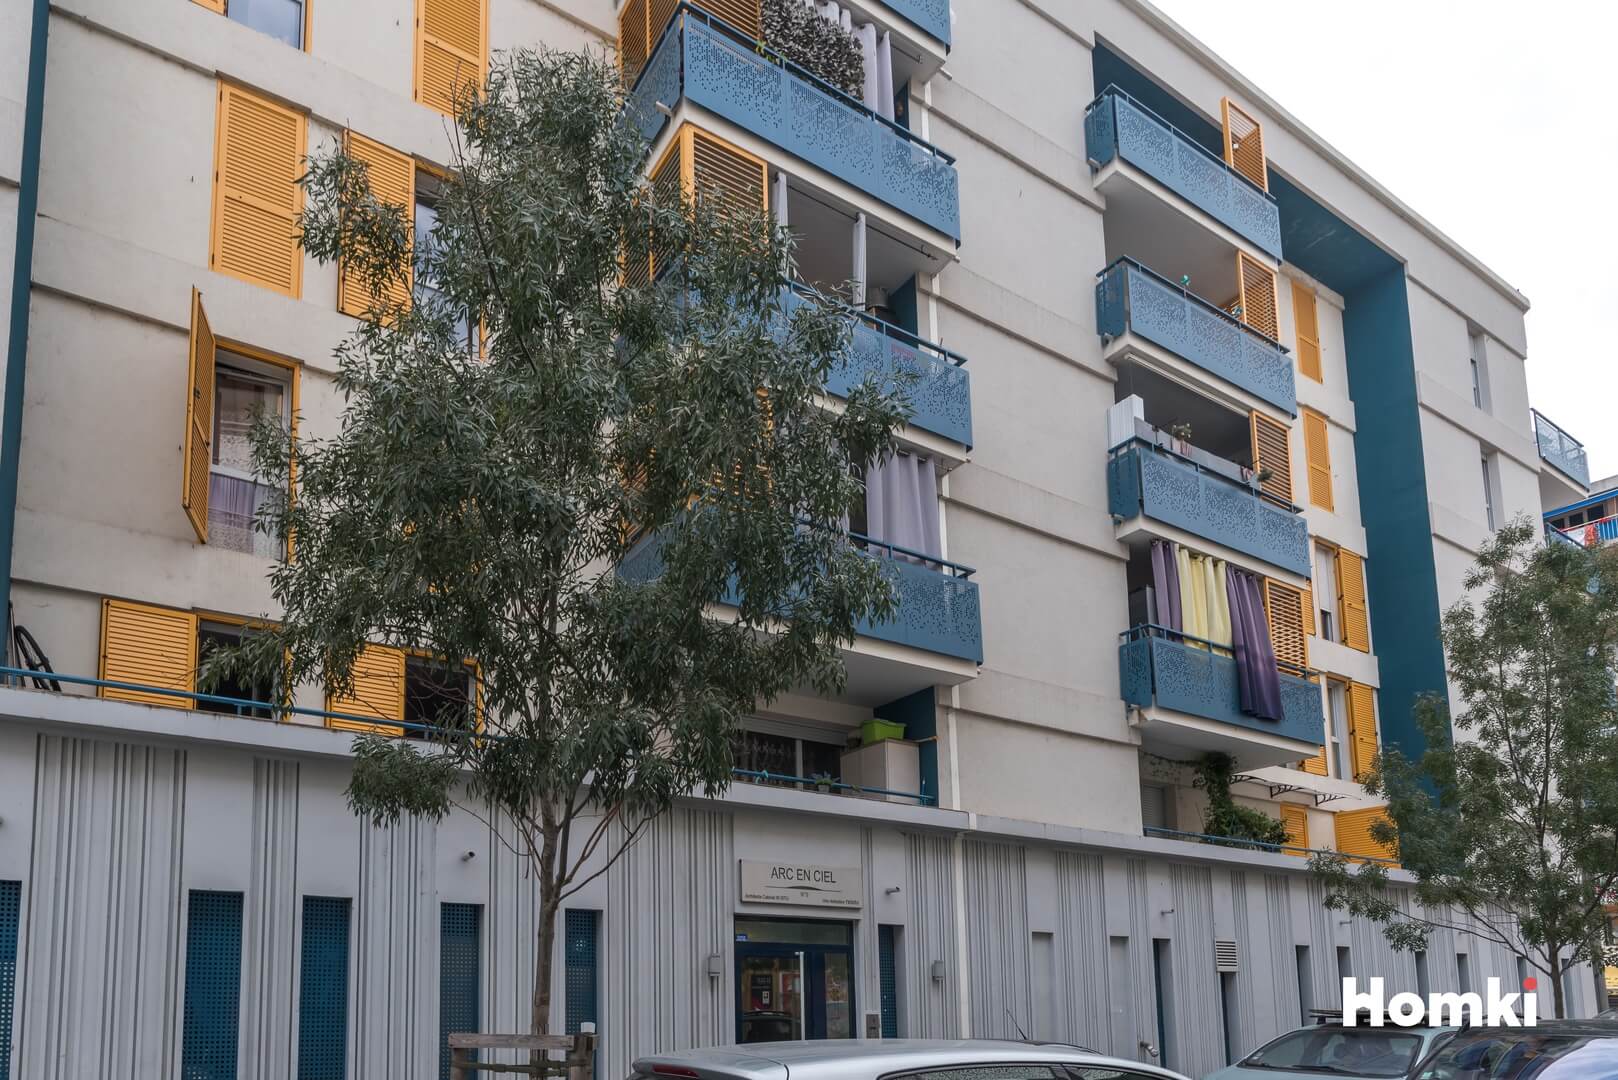 Homki - Vente Appartement  de 53.0 m² à Nice 06300